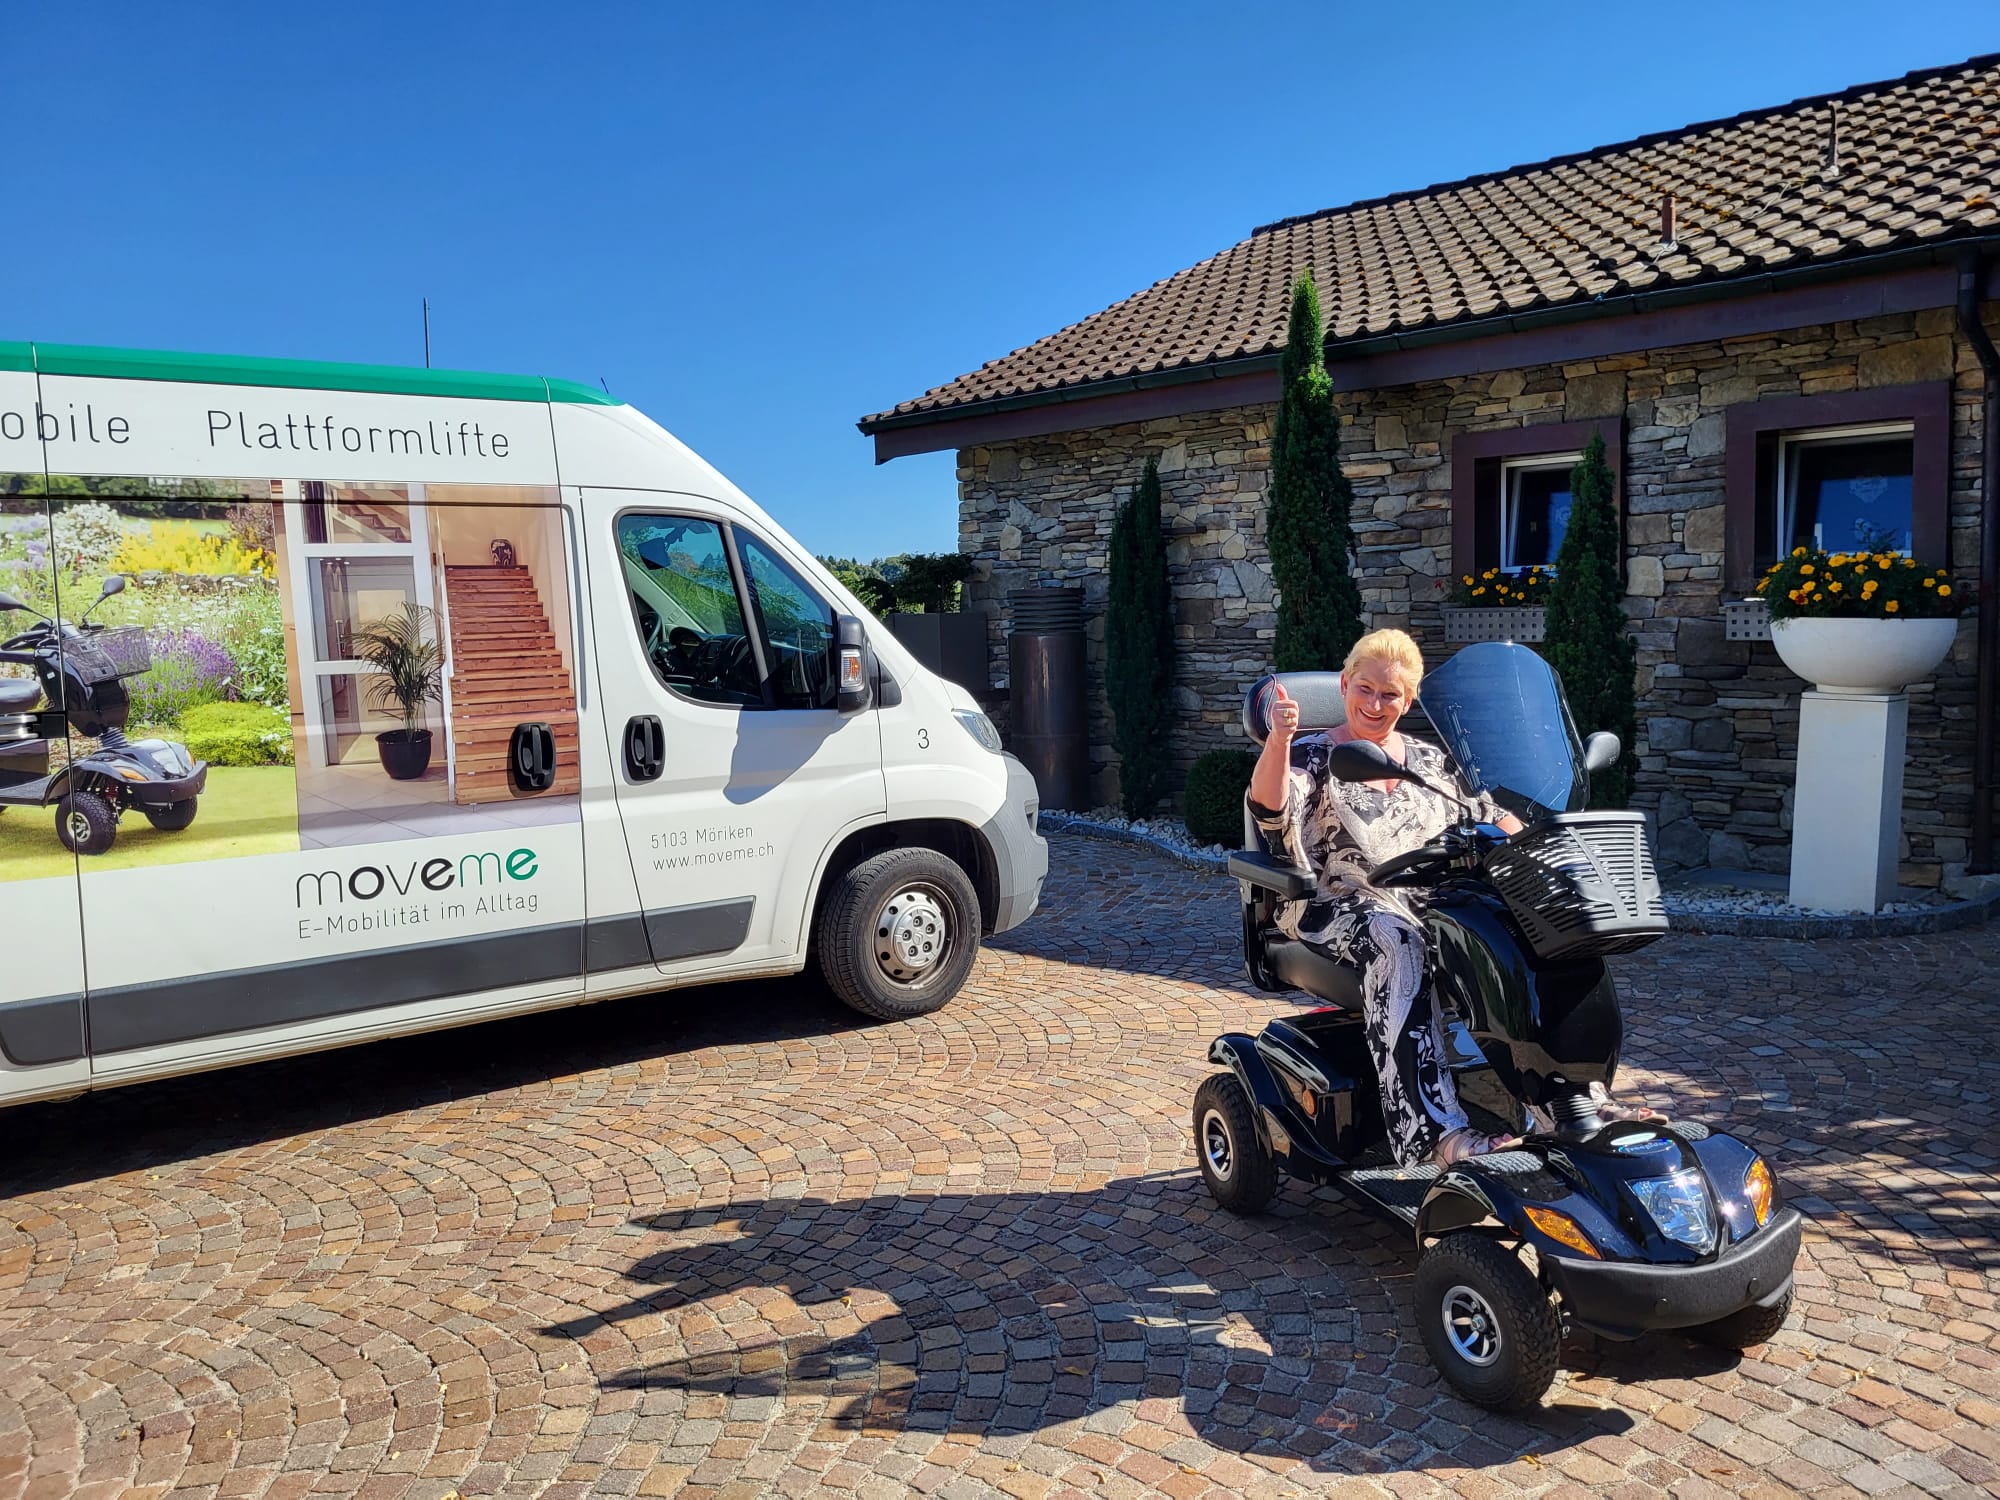 Elektromobil move Highlander mit Hunde-Spiralhalterung, abschliessbarer Euro-Kiste und Windschutzscheibe